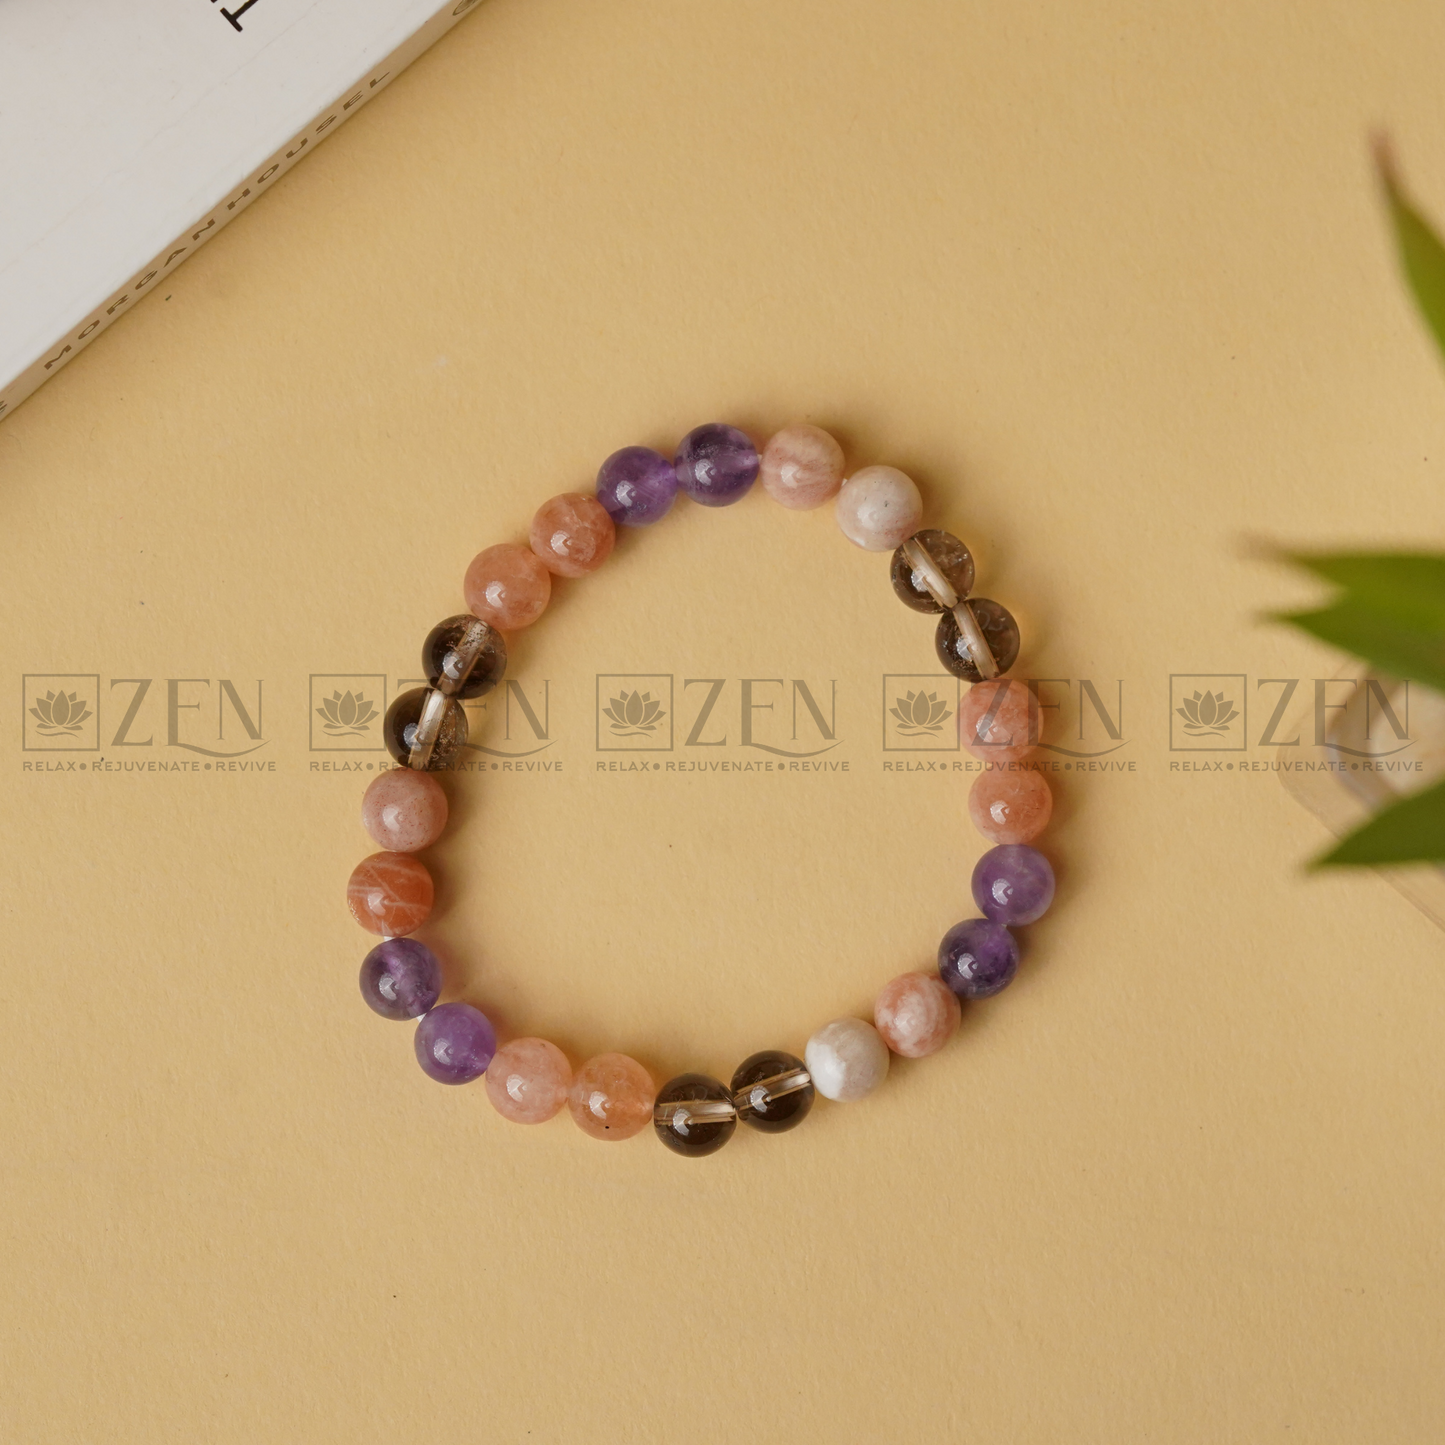 Zen Peace & Anxiety Relief Bracelet The Zen Crystals